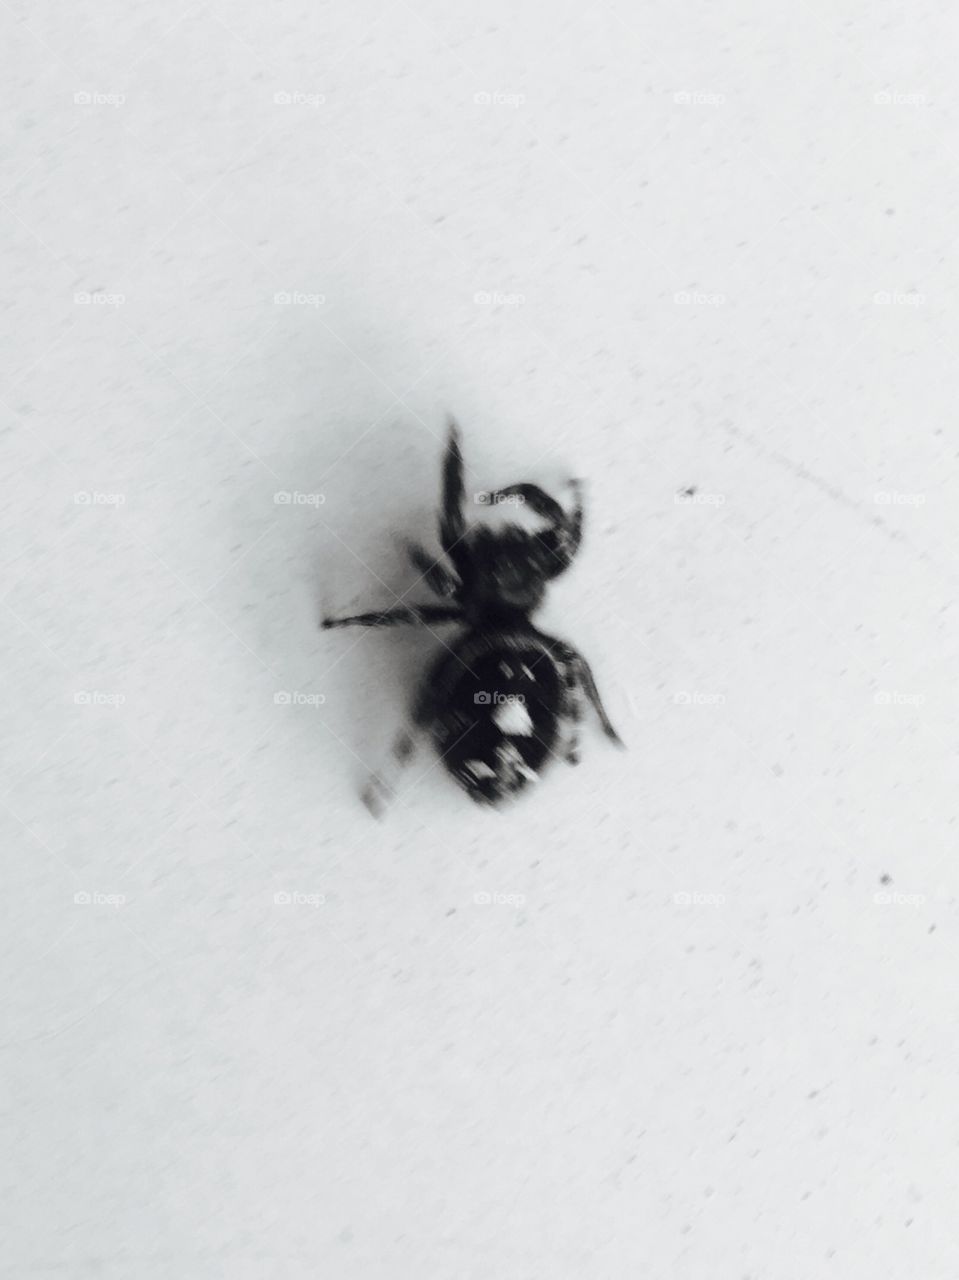 A close up of a creepy crawly spider.